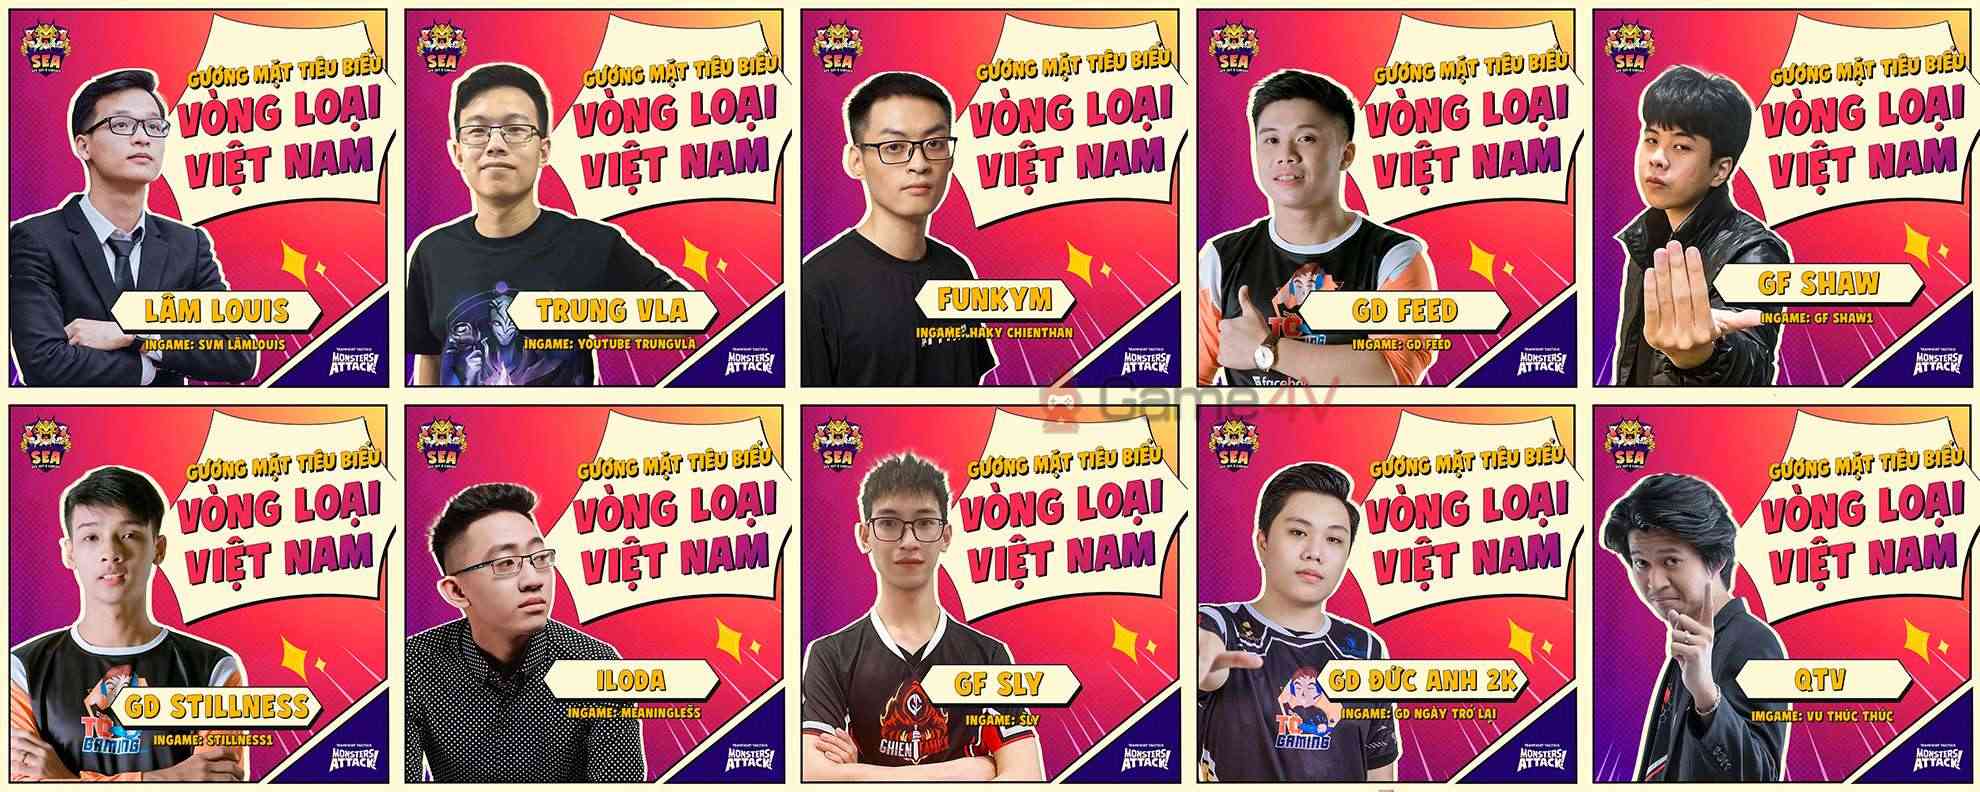 10 gương mặt tiêu biểu được chia sẻ trên fanpage Đấu Trường Chân Lý Việt Nam.